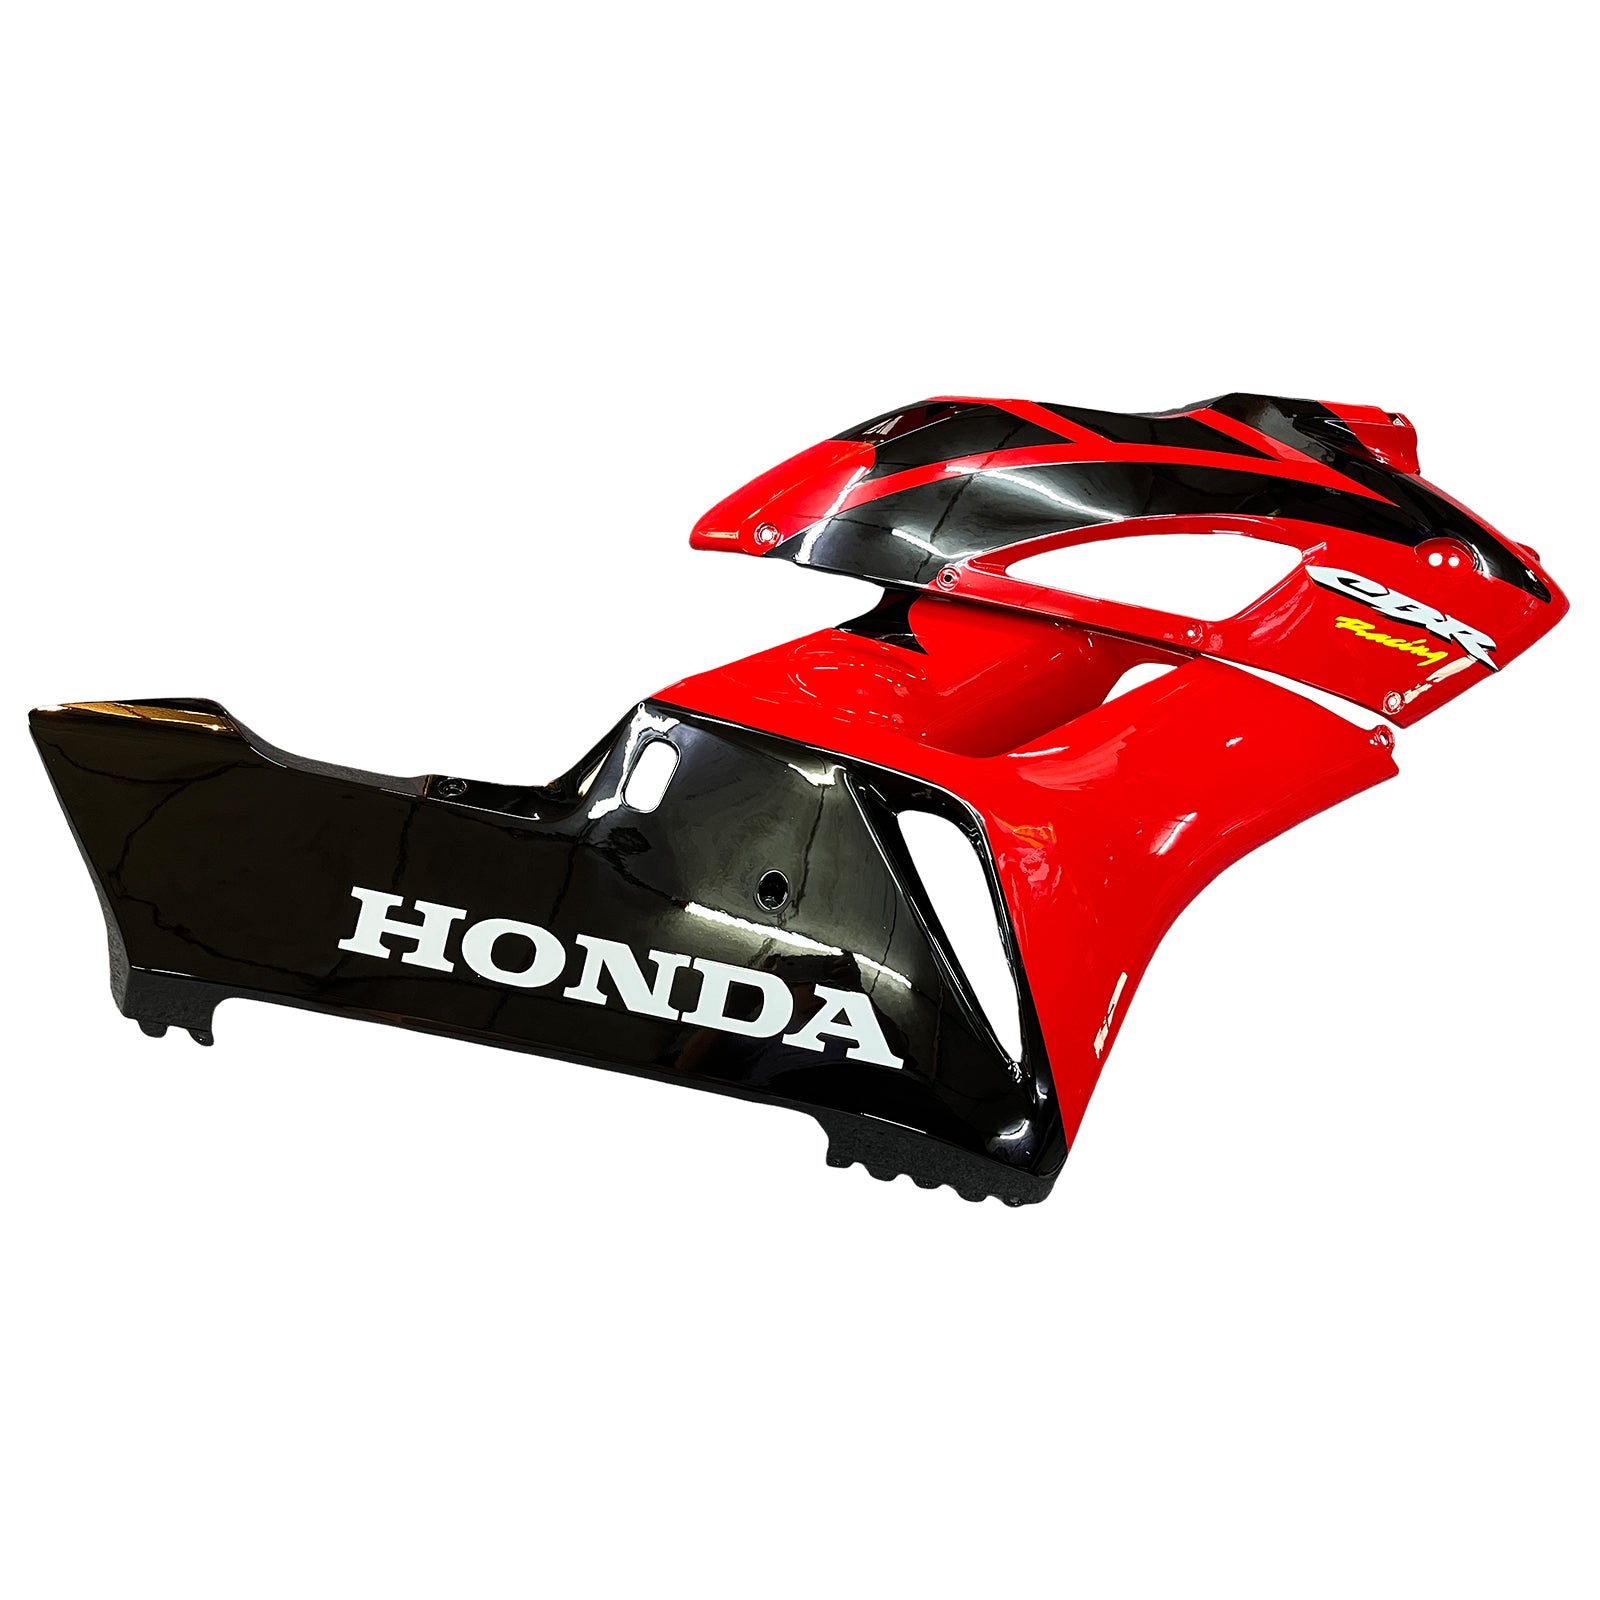 Amotopart Verkleidungen Honda 1000RR 2004-2005 Verkleidung Rot Schwarz CBR Racing Verkleidungsset